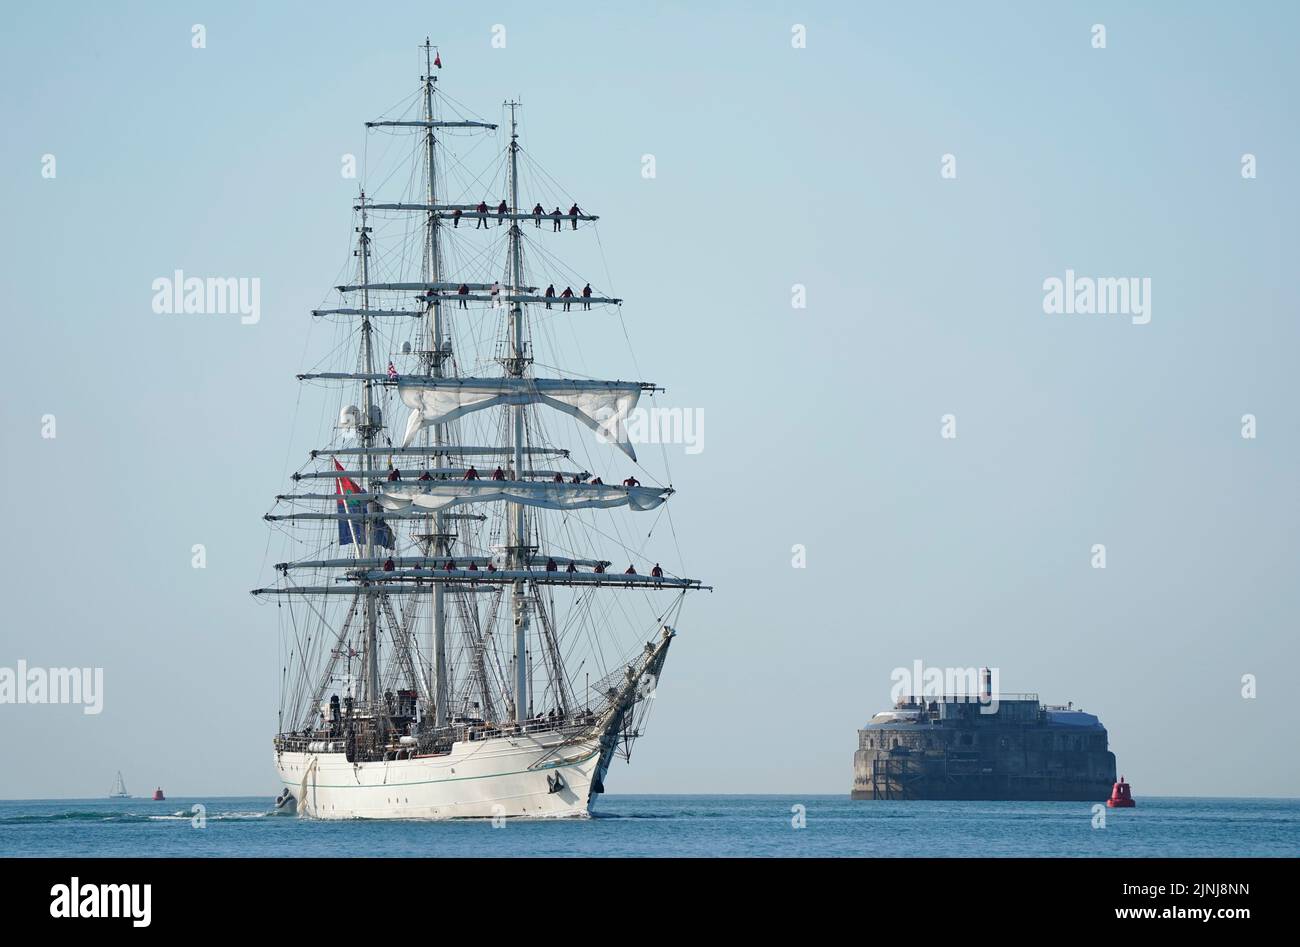 El buque Shabab Oman II, un buque de entrenamiento de la Royal Navy de Omán, pasa por el fuerte Spitbank mientras KIT llega al puerto de Portsmouth. El barco es una mezcla de lo tradicional y lo moderno con sistemas de comunicación informatizados y equipos de navegación de vanguardia, pero desde la plataforma de madera hacia arriba, el barco es tradicional en términos de velas y aparejo. Fecha de la foto: Viernes 12 de agosto de 2022. Foto de stock